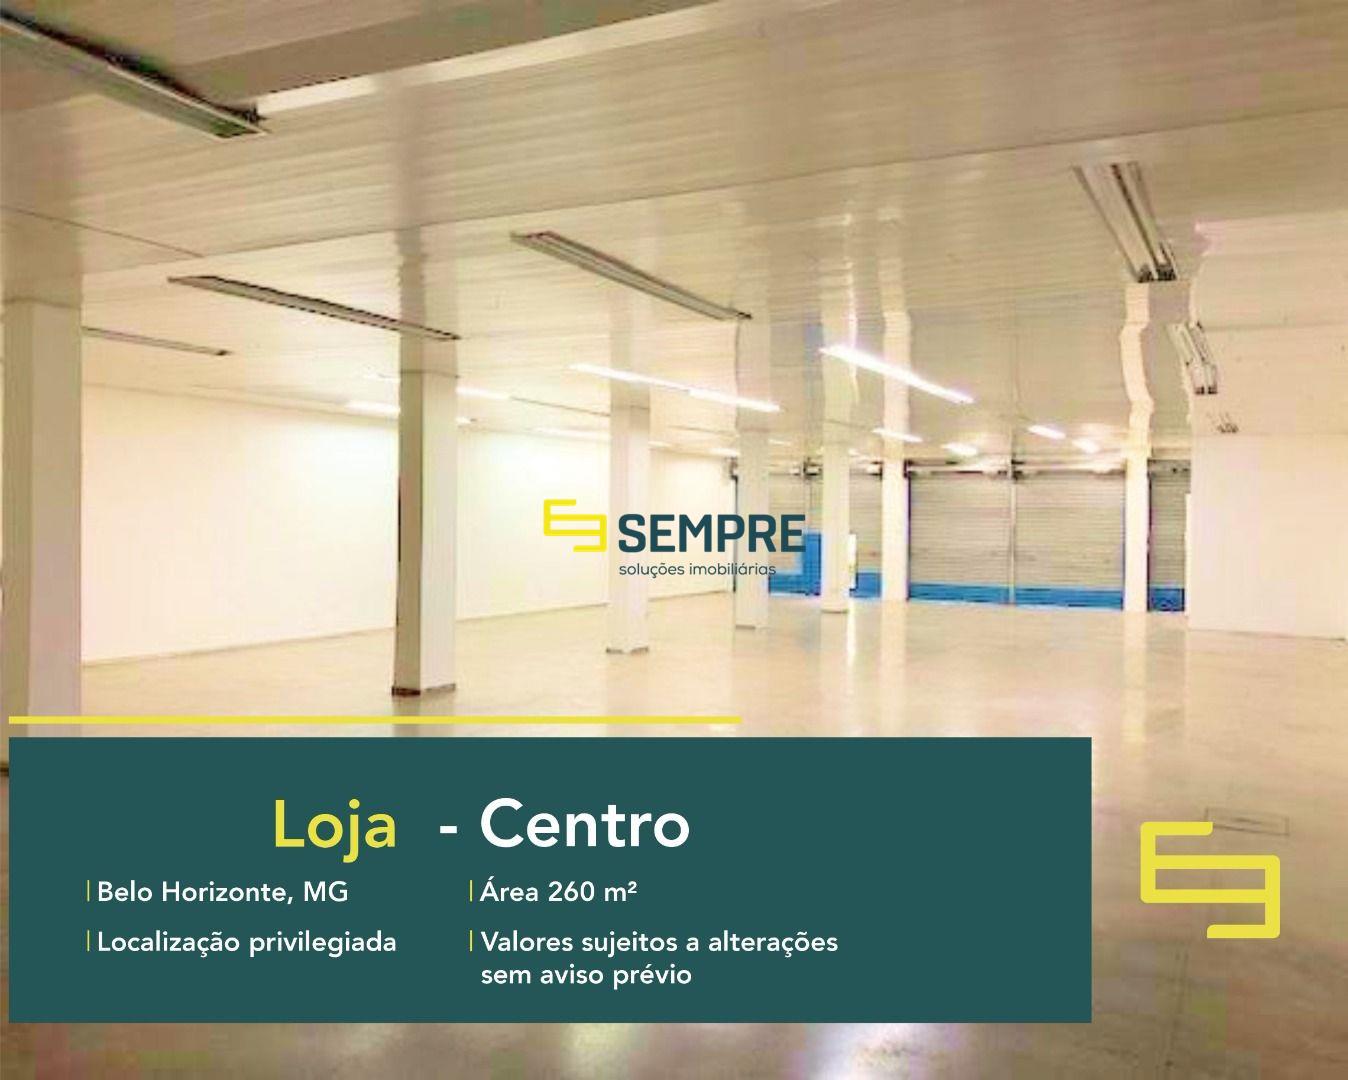 Loja para locação na cidade de Belo Horizonte com excelente localização. O estabelecimento comercial para alugar conta com área de 260 m².